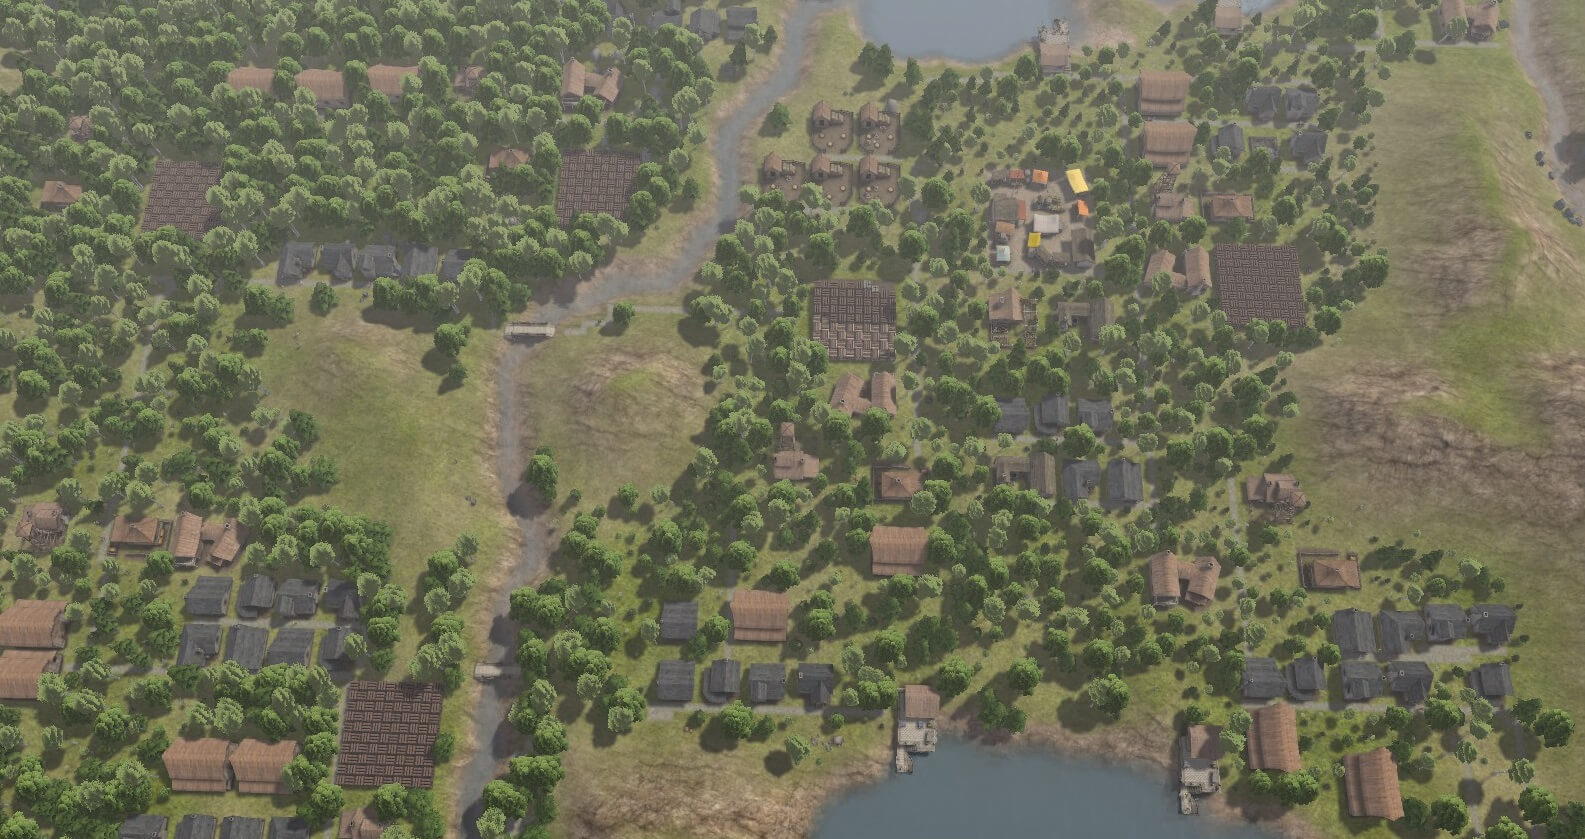 Banished 攻略ブログ 人口1000人以上維持する村の作り方 Game Play360